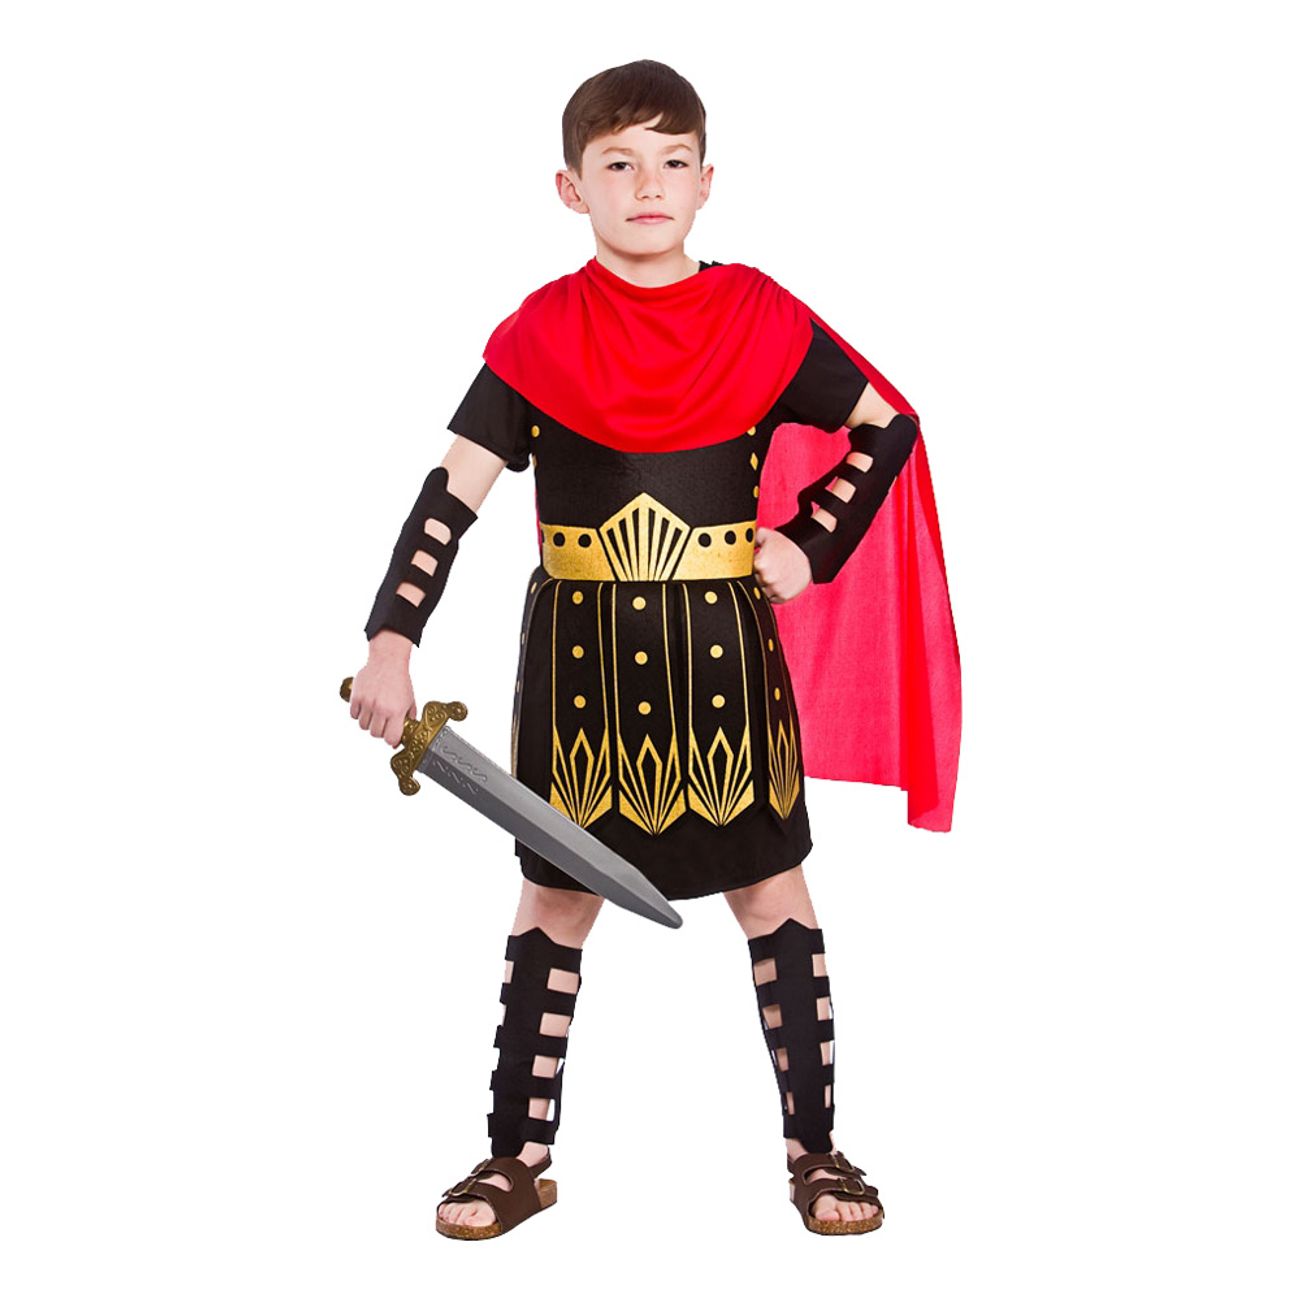 romersk-krigare-barn-maskeraddrakt-1